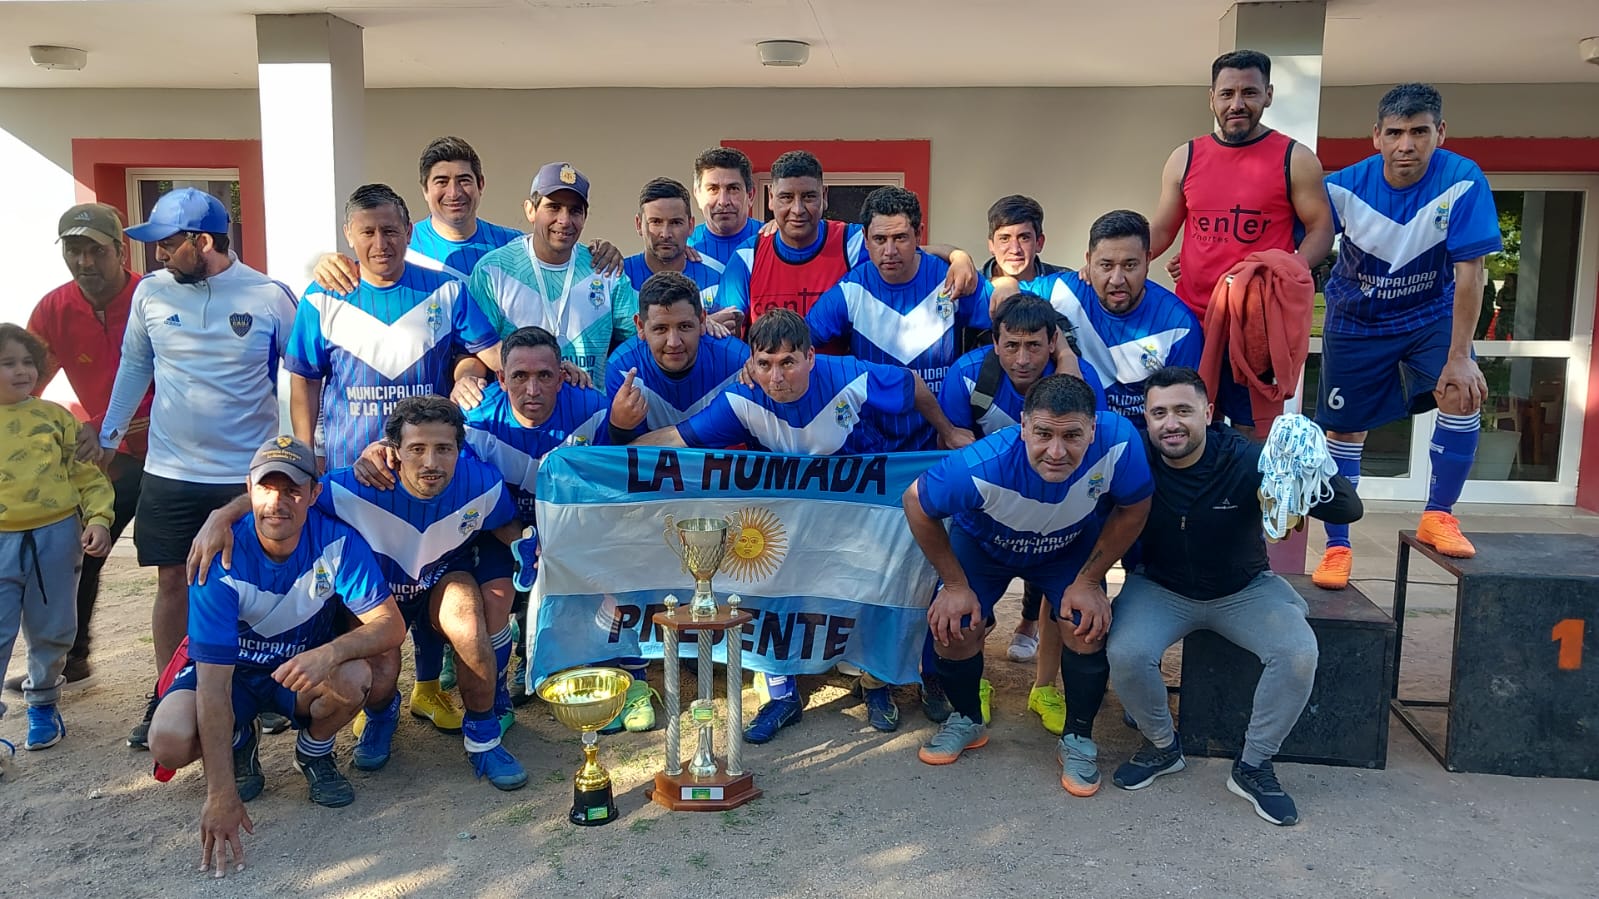 Fútbol Senior: la copa campeonato quedó en manos de La Humada